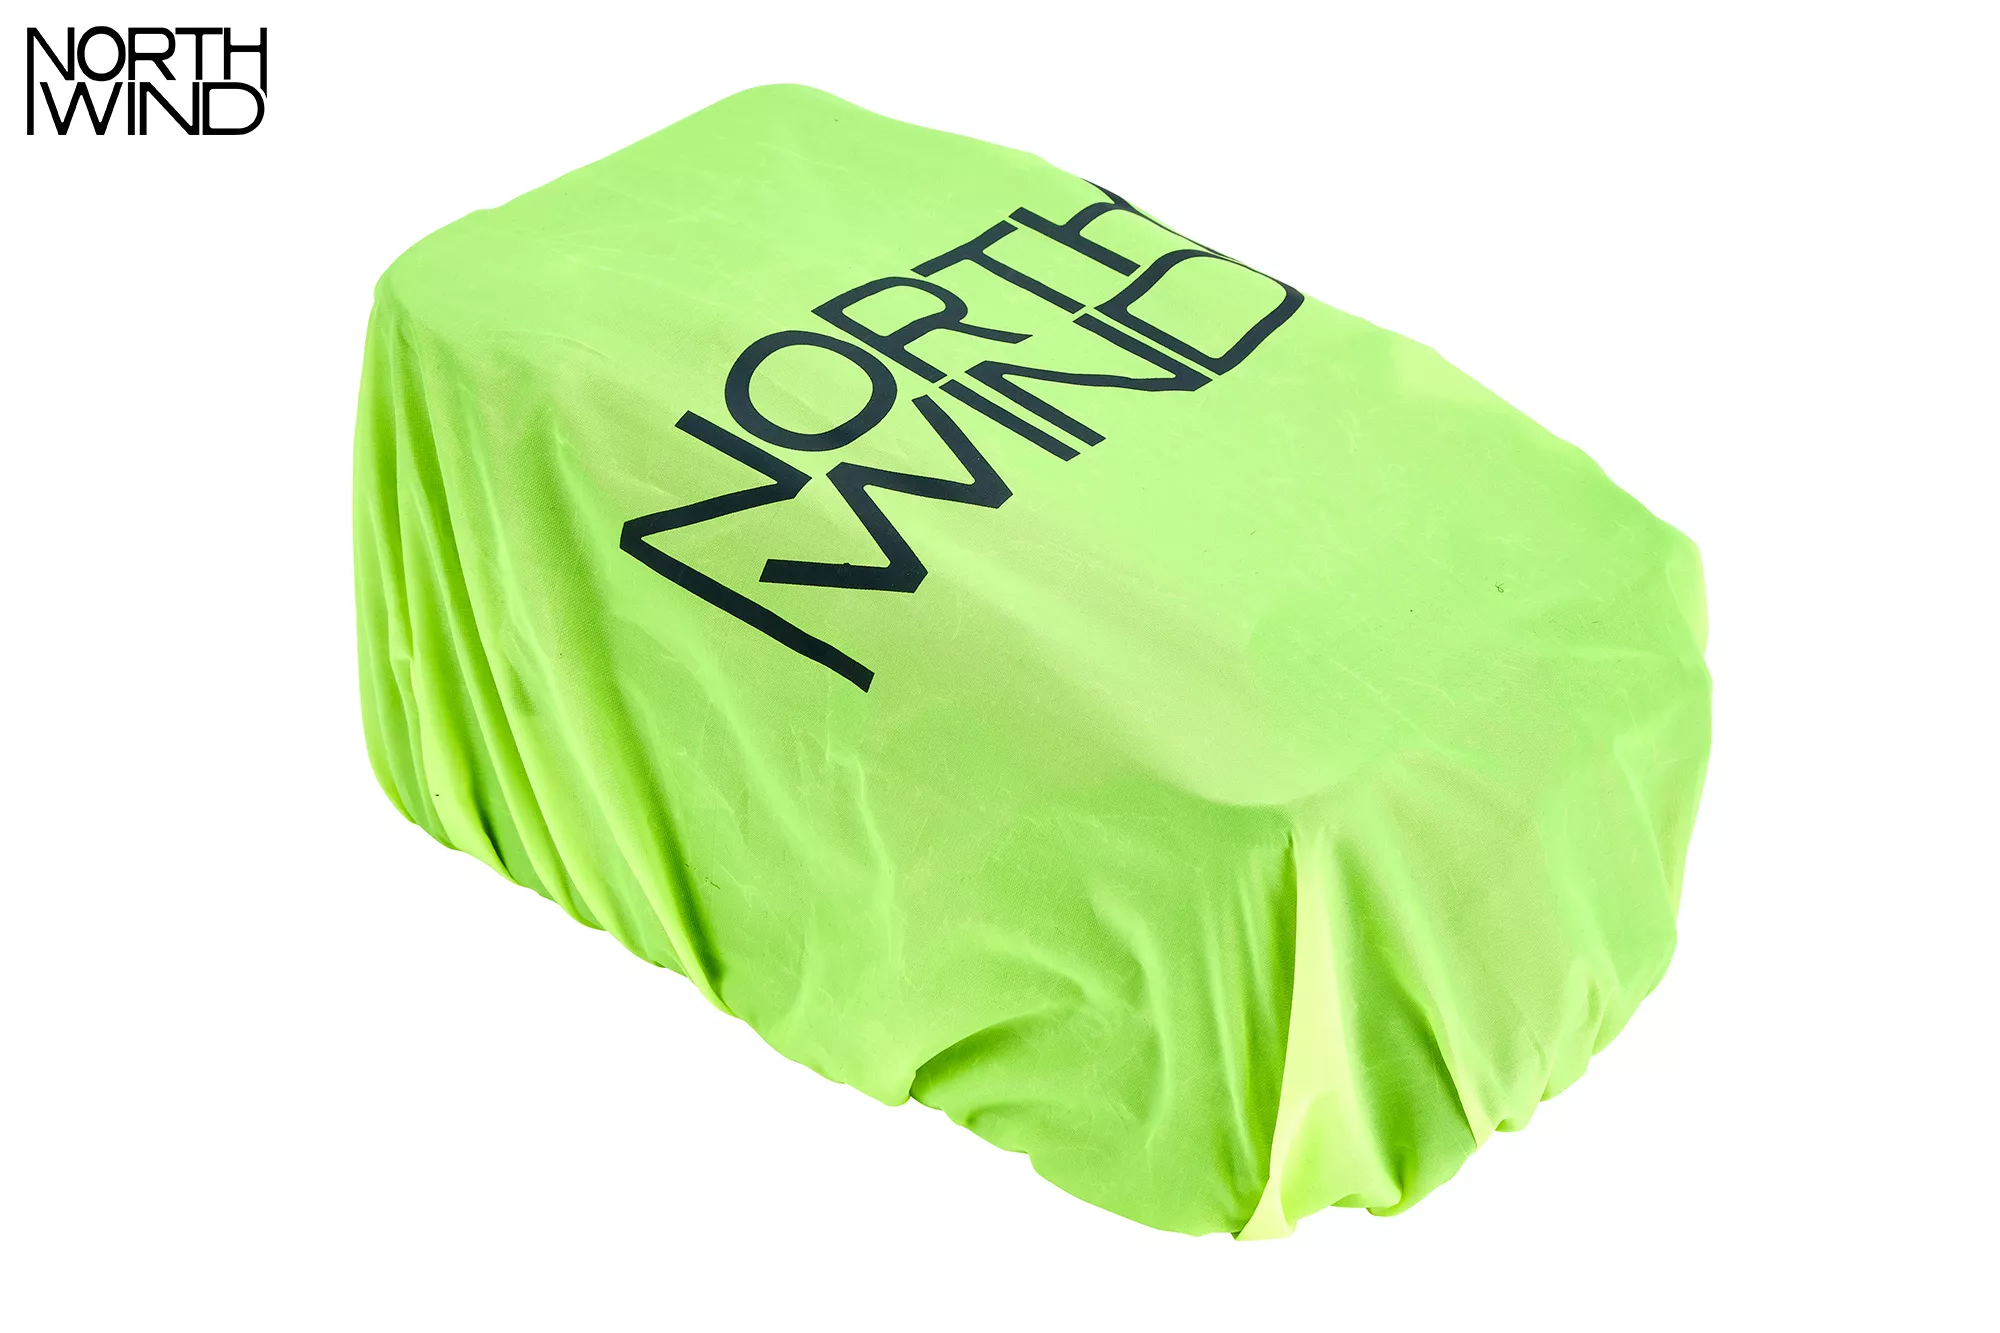 NORTHWIND One4All MLT  Smartbag - MonkeyLoad T Gepäckträgertasche 